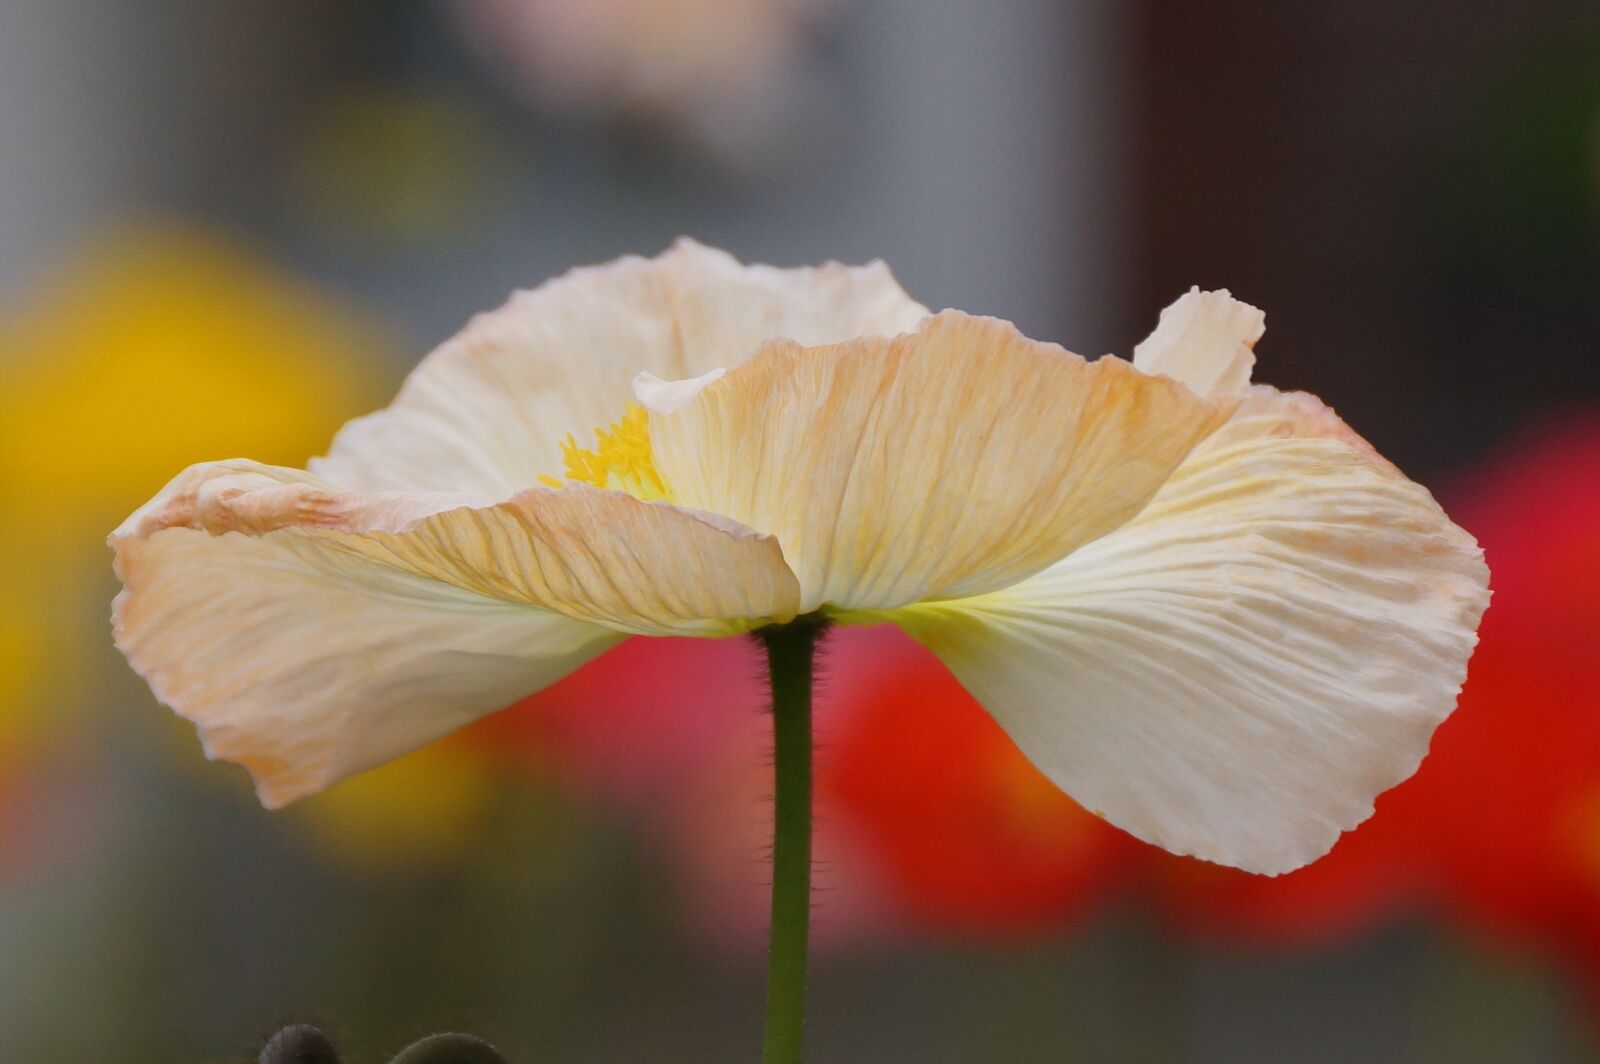 Sony SLT-A77 + Sony DT 18-250mm F3.5-6.3 sample photo. White, poppy, flower photography